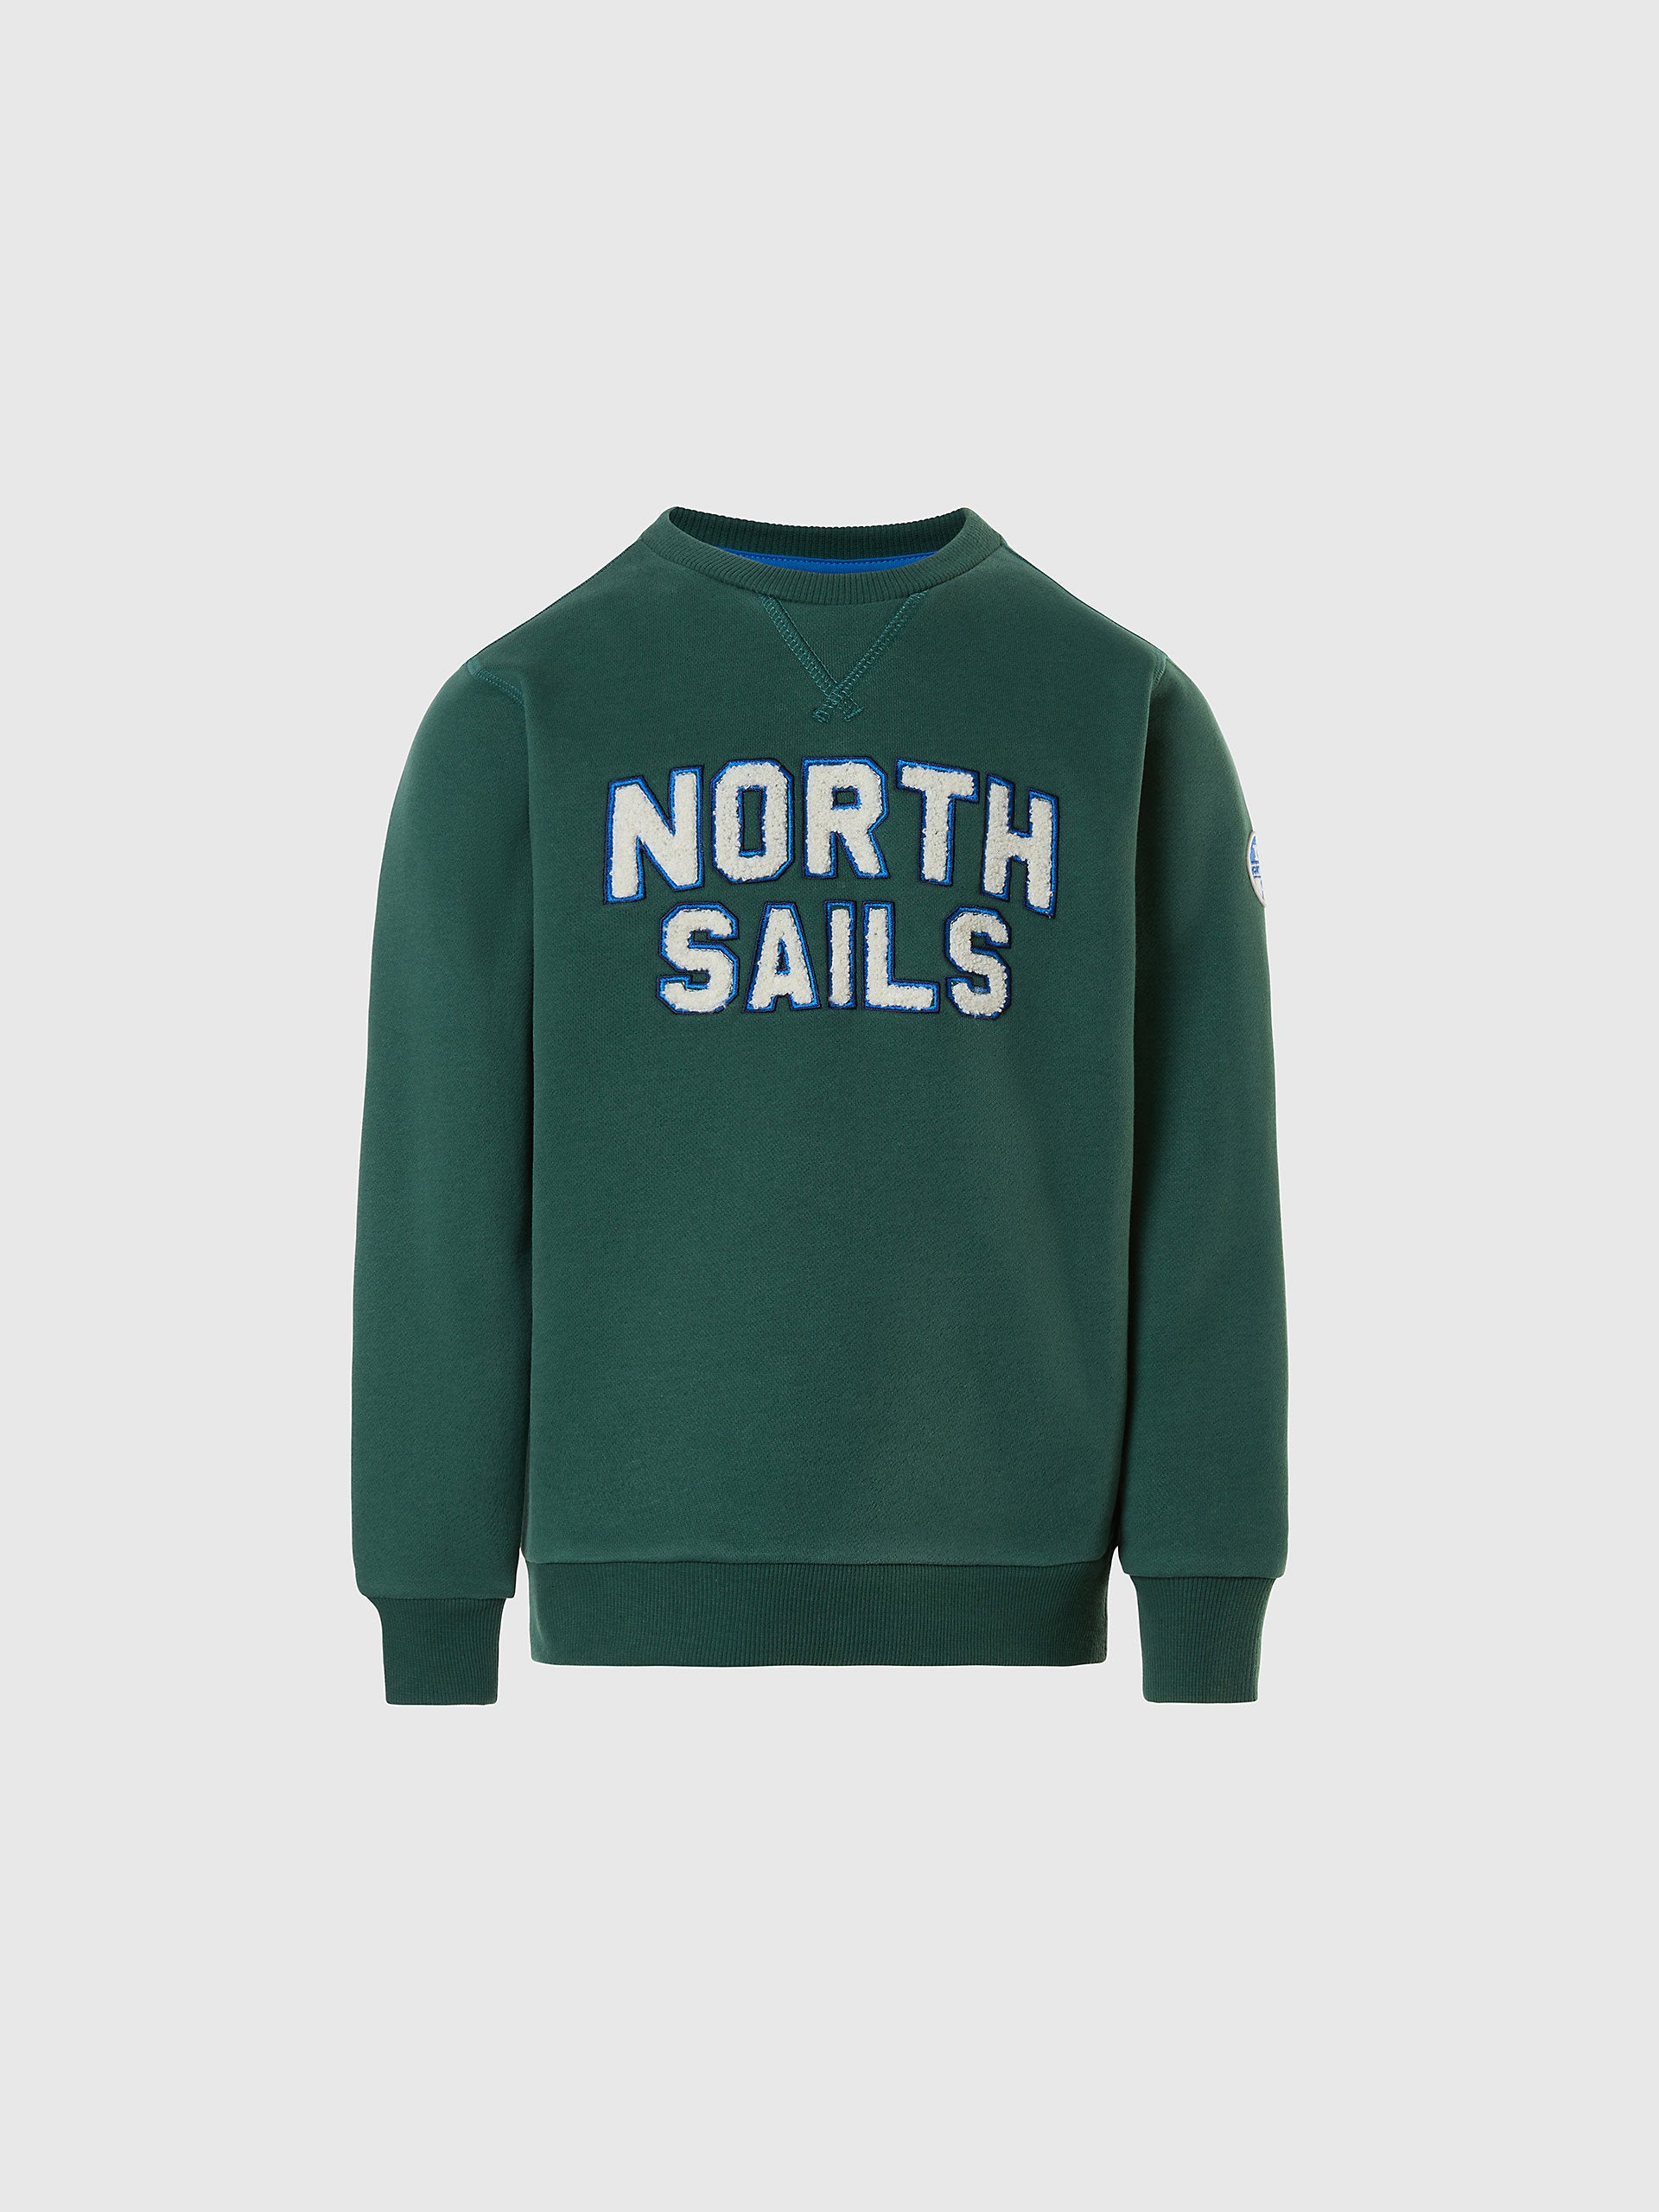 North Sails - Felpa con letteringNorth SailsHunter green6